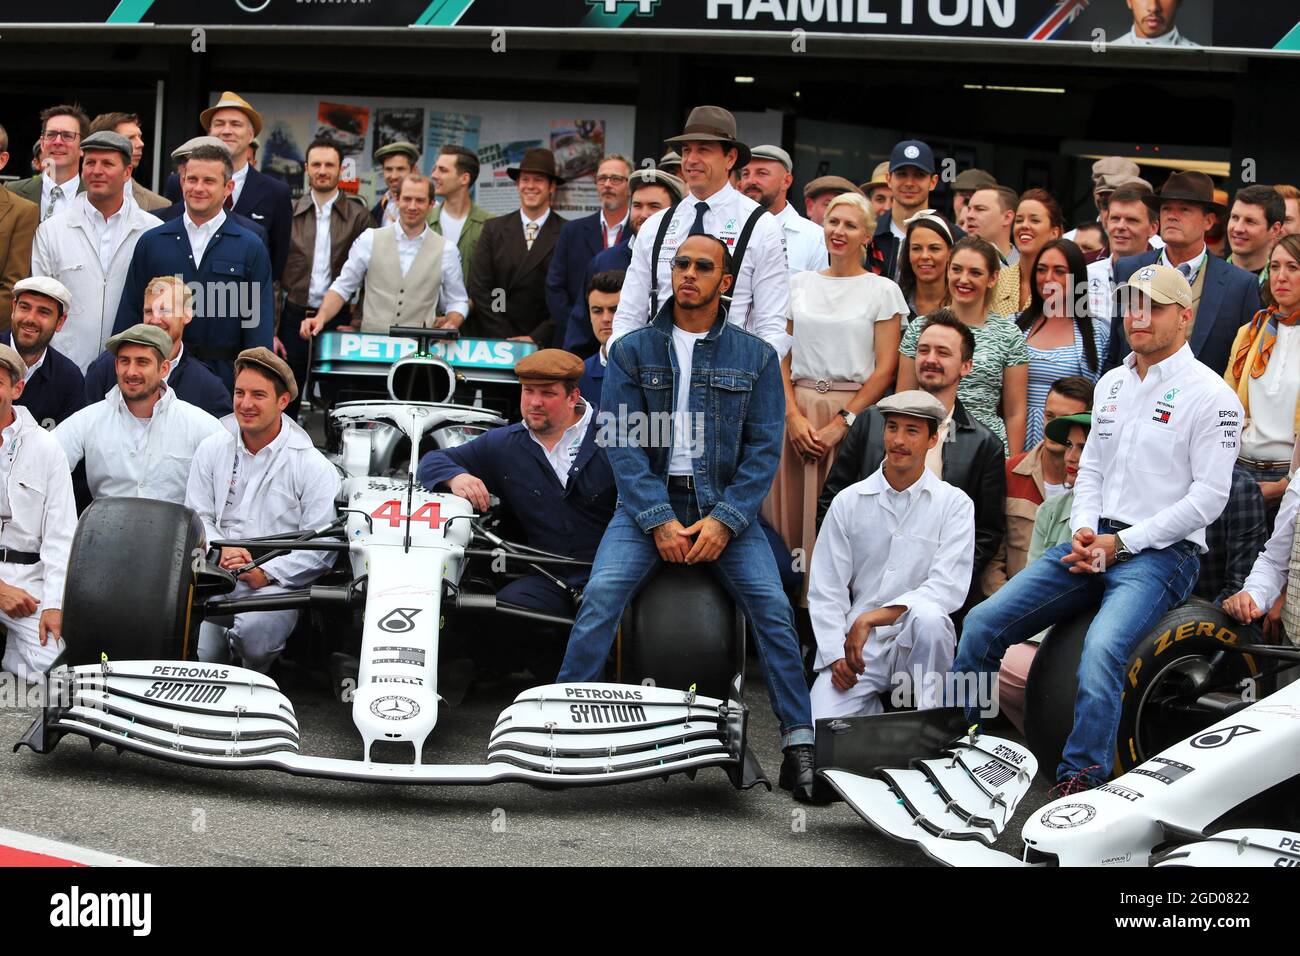 Lewis Hamilton (GBR) Mercedes AMG F1, Toto Wolff (GER) Mercedes AMG F1  actionnaire et directeur exécutif; Valtteri Bottas (fin) Mercedes AMG F1,  et l'écurie portent des vêtements vintage pour célébrer 125 ans